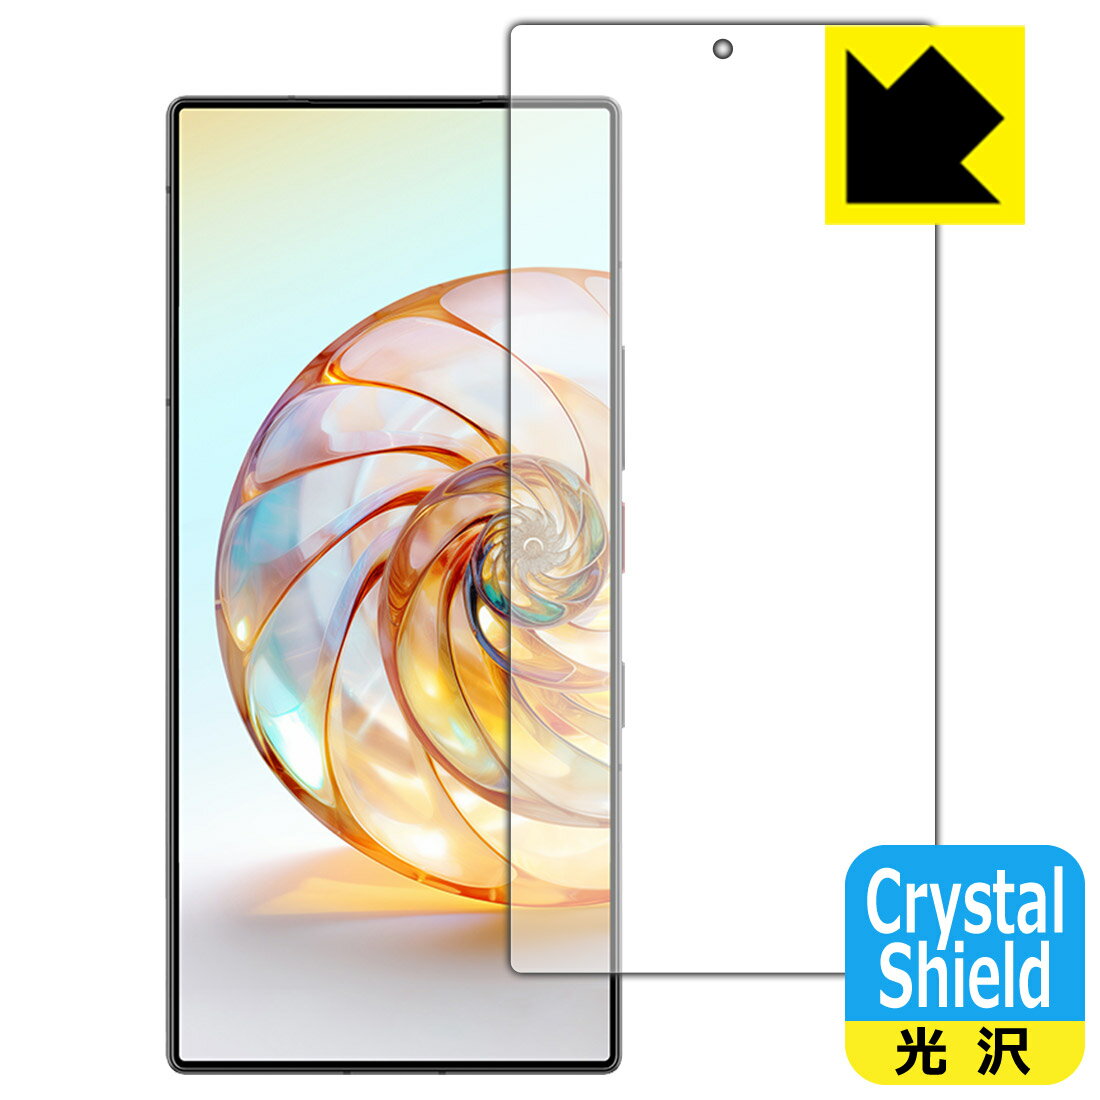 対応機種●対応機種 : nubia Z60 Ultra専用の商品です。●製品内容 : 画面用フィルム1枚・クリーニングワイプ1個　　※画面での指紋認証に対応しています。●※この機器は周辺部が曲面となっているため、保護フィルムを端まで貼ることができません。(表示部分はカバーしています)●「Crystal Shield」は高い透明度と光沢感で、保護フィルムを貼っていないかのようなクリア感のある『光沢タイプの保護フィルム』●安心の国産素材を使用。日本国内の自社工場で製造し出荷しています。 ★貼り付け失敗交換サービス対象商品★ 国内自社工場製造・発送だからできる 安心の製品保証とサポート ■製品保証 お届けした製品が誤っていたり、不具合があった場合などには、お届けから1ヶ月以内にメールにてお問い合わせください。交換等対応させていただきます。[キャンセル・返品（返金・交換）について] ■■貼り付け失敗時の交換サービス■■貼り付けに失敗しても1回だけ無償交換ができます。(失敗したフィルムをお送りいただき、新品に無償交換します。往復の送料のみお客様にご負担をお願いいたします。詳しくは製品に同封の紙をご確認ください) ■■保護フィルム貼り付け代行サービス■■保護フィルムの貼り付け作業に自信がない方には、PDA工房で貼り付け作業を代行いたします。(PDA工房の保護フィルムのみが対象です。詳しくは製品に同封の紙をご確認ください) Crystal Shield【光沢】保護フィルム 素材説明 ■高級感あふれる光沢と画質を損なわない透明度！貼っていることを意識させないほどの高い透明度に、高級感あふれる光沢・クリアな仕上げとなります。動画視聴や画像編集など、機器本来の発色を重視したい方におすすめです。■ハードコートでスリキズを防ぎ、フッ素加工で汚れもつきにくい！ハードコート加工がされており、キズや擦れに強くなっています。簡単にキズがつかず長くご利用いただけます。表面はフッ素コーティングがされており、皮脂や汚れがつきにくく、また、落ちやすくなっています。指滑りもなめらかで、快適な使用感です。■気泡の入りにくい特殊な自己吸着タイプ接着面は気泡の入りにくい特殊な自己吸着タイプです。素材に柔軟性があり、貼り付け作業も簡単にできます。また、はがすときにガラス製フィルムのように割れてしまうことはありません。貼り直しが何度でもできるので、正しい位置へ貼り付けられるまでやり直すことができます。■抗菌加工で清潔抗菌加工によりフィルム表面の菌の繁殖を抑えることができます。清潔な画面を保ちたい方におすすめです。※抗菌率99.9％ / JIS Z2801 抗菌性試験方法による評価■安心の日本製最高級グレードの国産素材を日本国内の弊社工場で加工している完全な Made in Japan です。安心の品質をお届けします。 【ポスト投函送料無料】商品は【ポスト投函発送 (追跡可能メール便)】で発送します。お急ぎ、配達日時を指定されたい方は以下のクーポンを同時購入ください。【お急ぎ便クーポン】　プラス110円(税込)で速達扱いでの発送。お届けはポストへの投函となります。【配達日時指定クーポン】　プラス550円(税込)で配達日時を指定し、宅配便で発送させていただきます。【お急ぎ便クーポン】はこちらをクリック【配達日時指定クーポン】はこちらをクリック